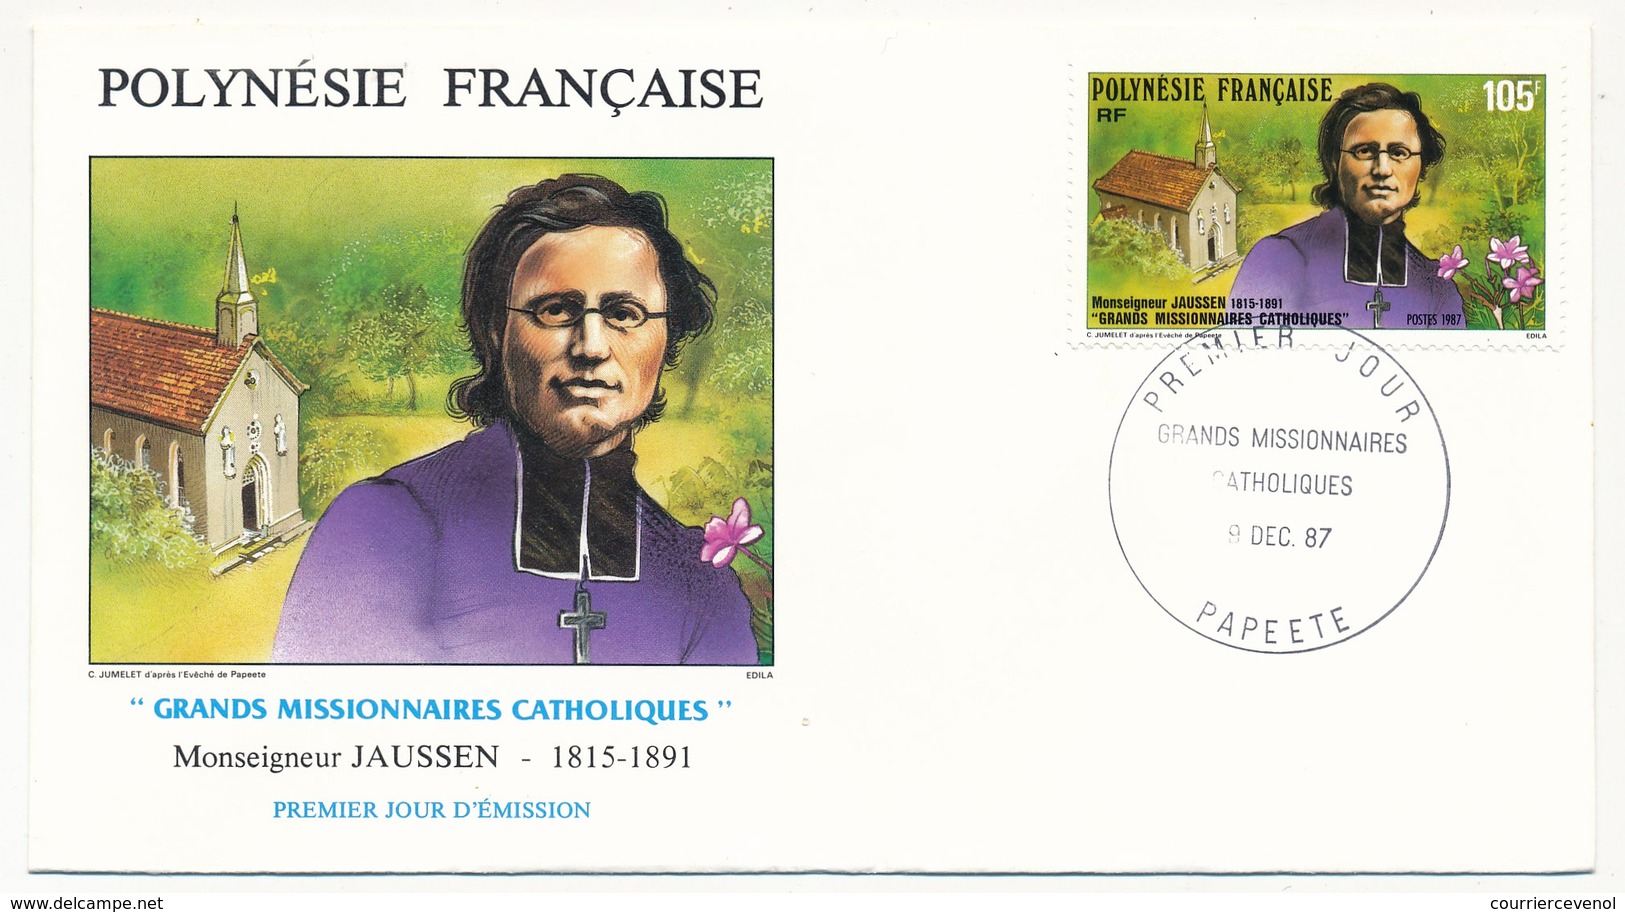 POLYNESIE FRANCAISE - 3 FDC - Grands Missionnaires Catholiques - 9 Décembre 1987 - Papeete - FDC